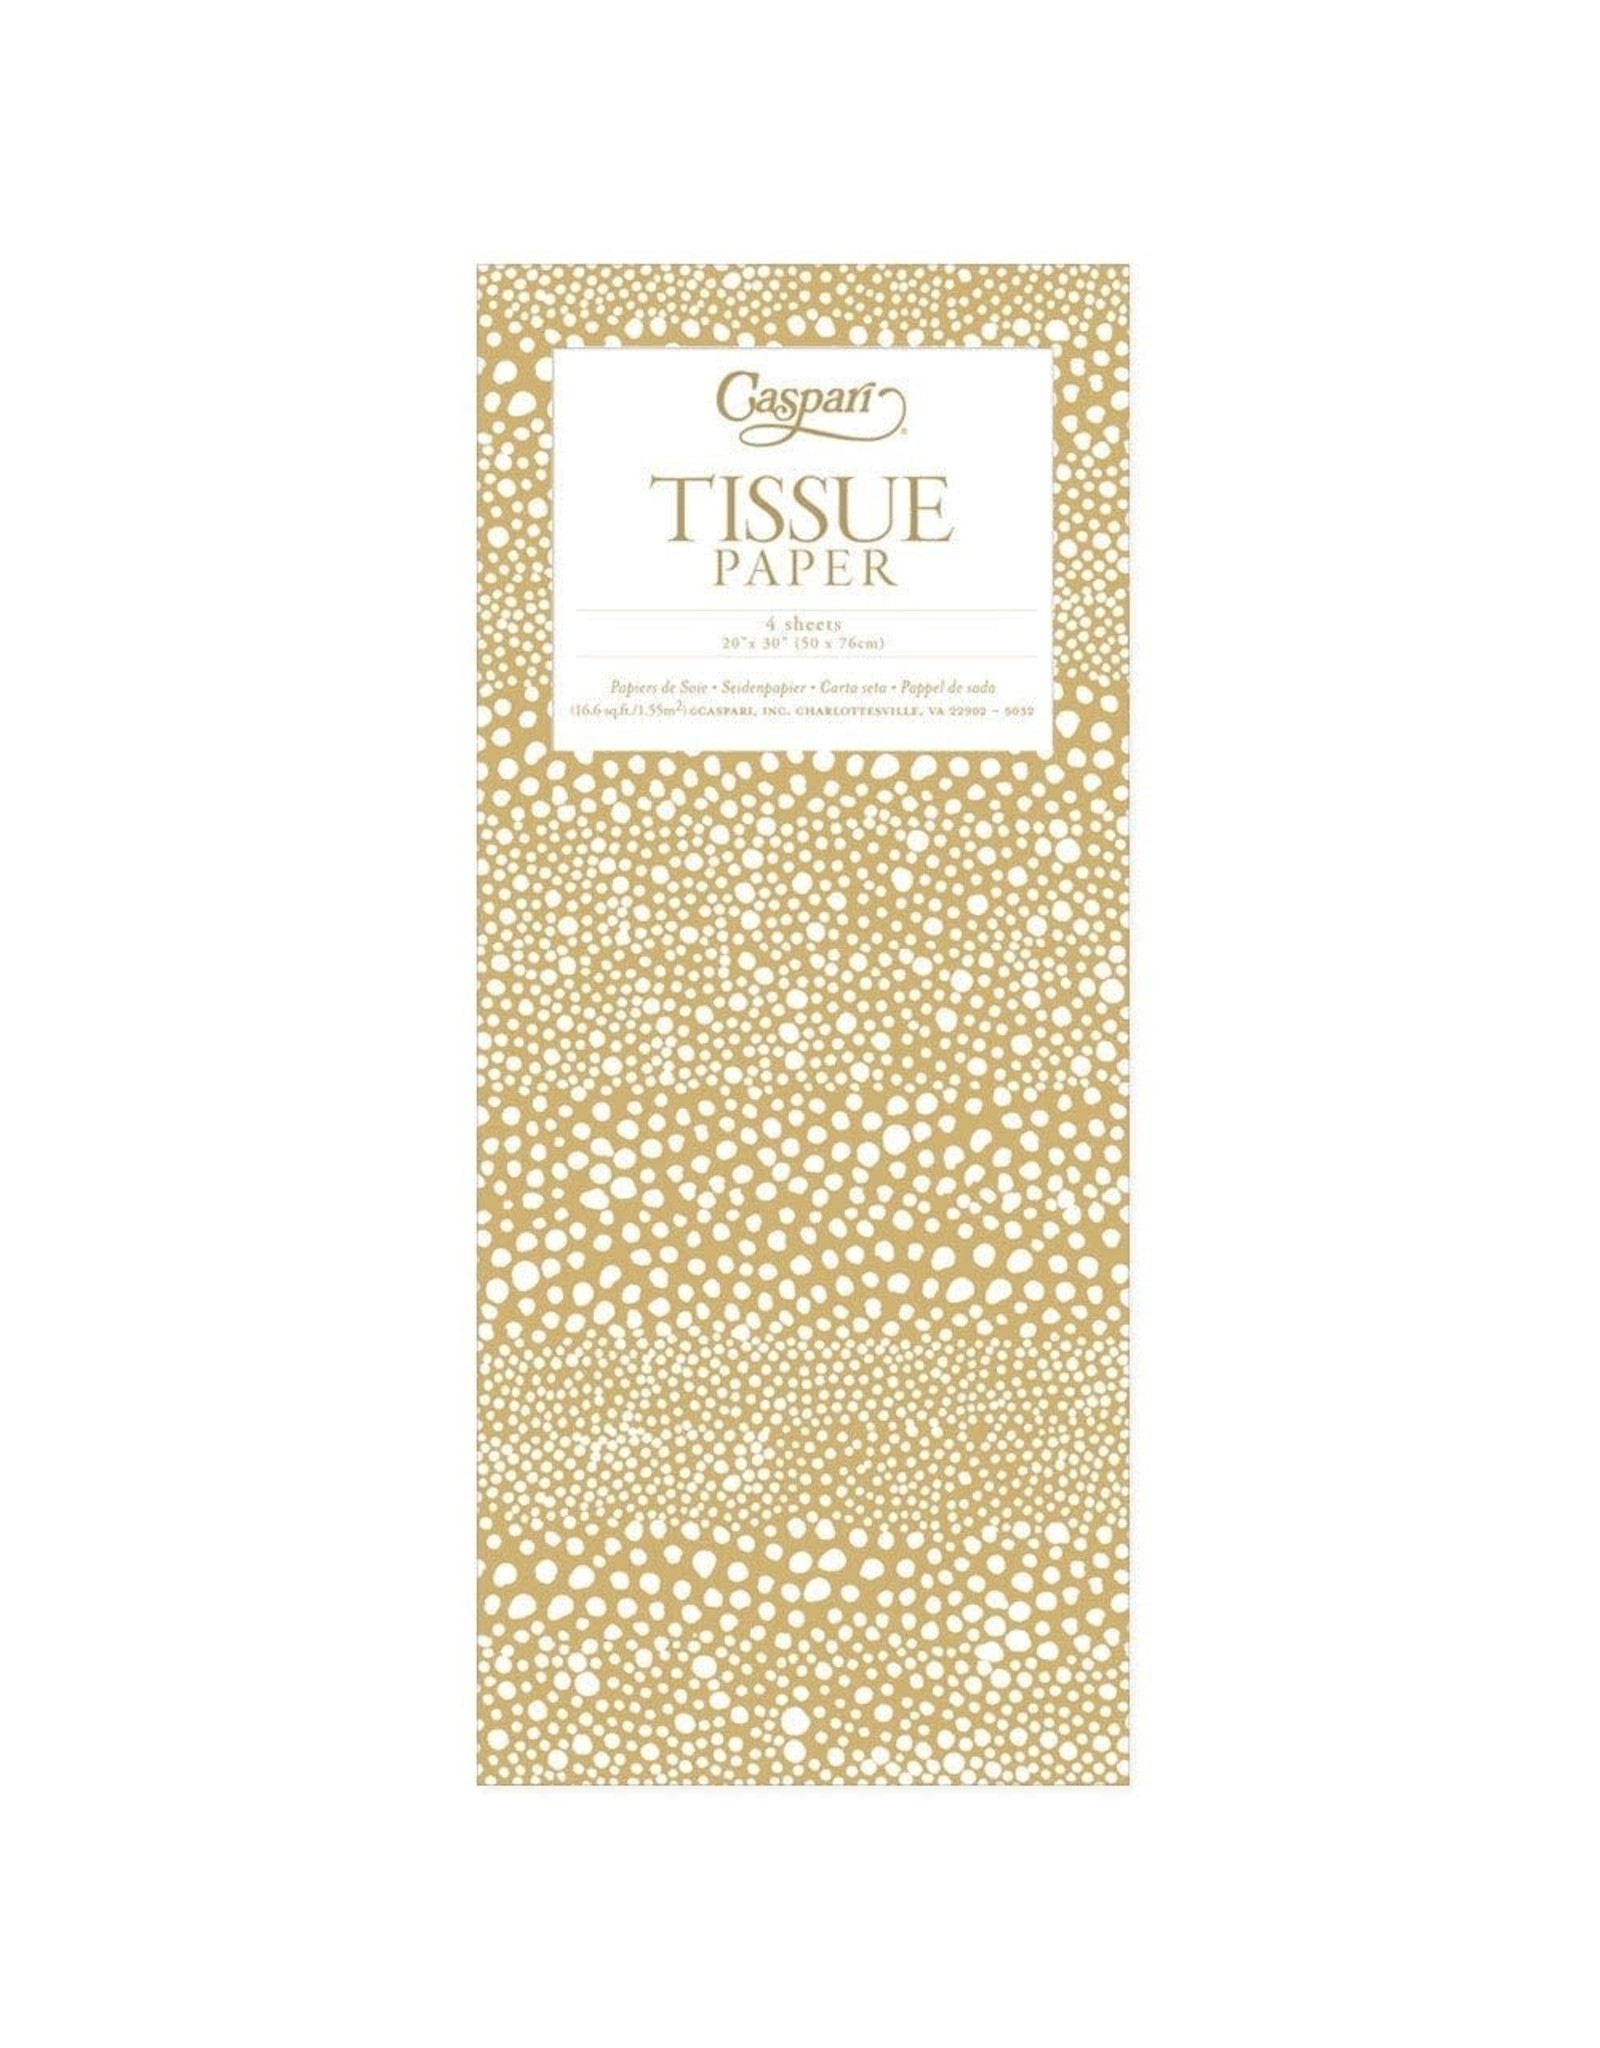 Caspari Gift Tissue Paper 4 Sheets Pebble Gold